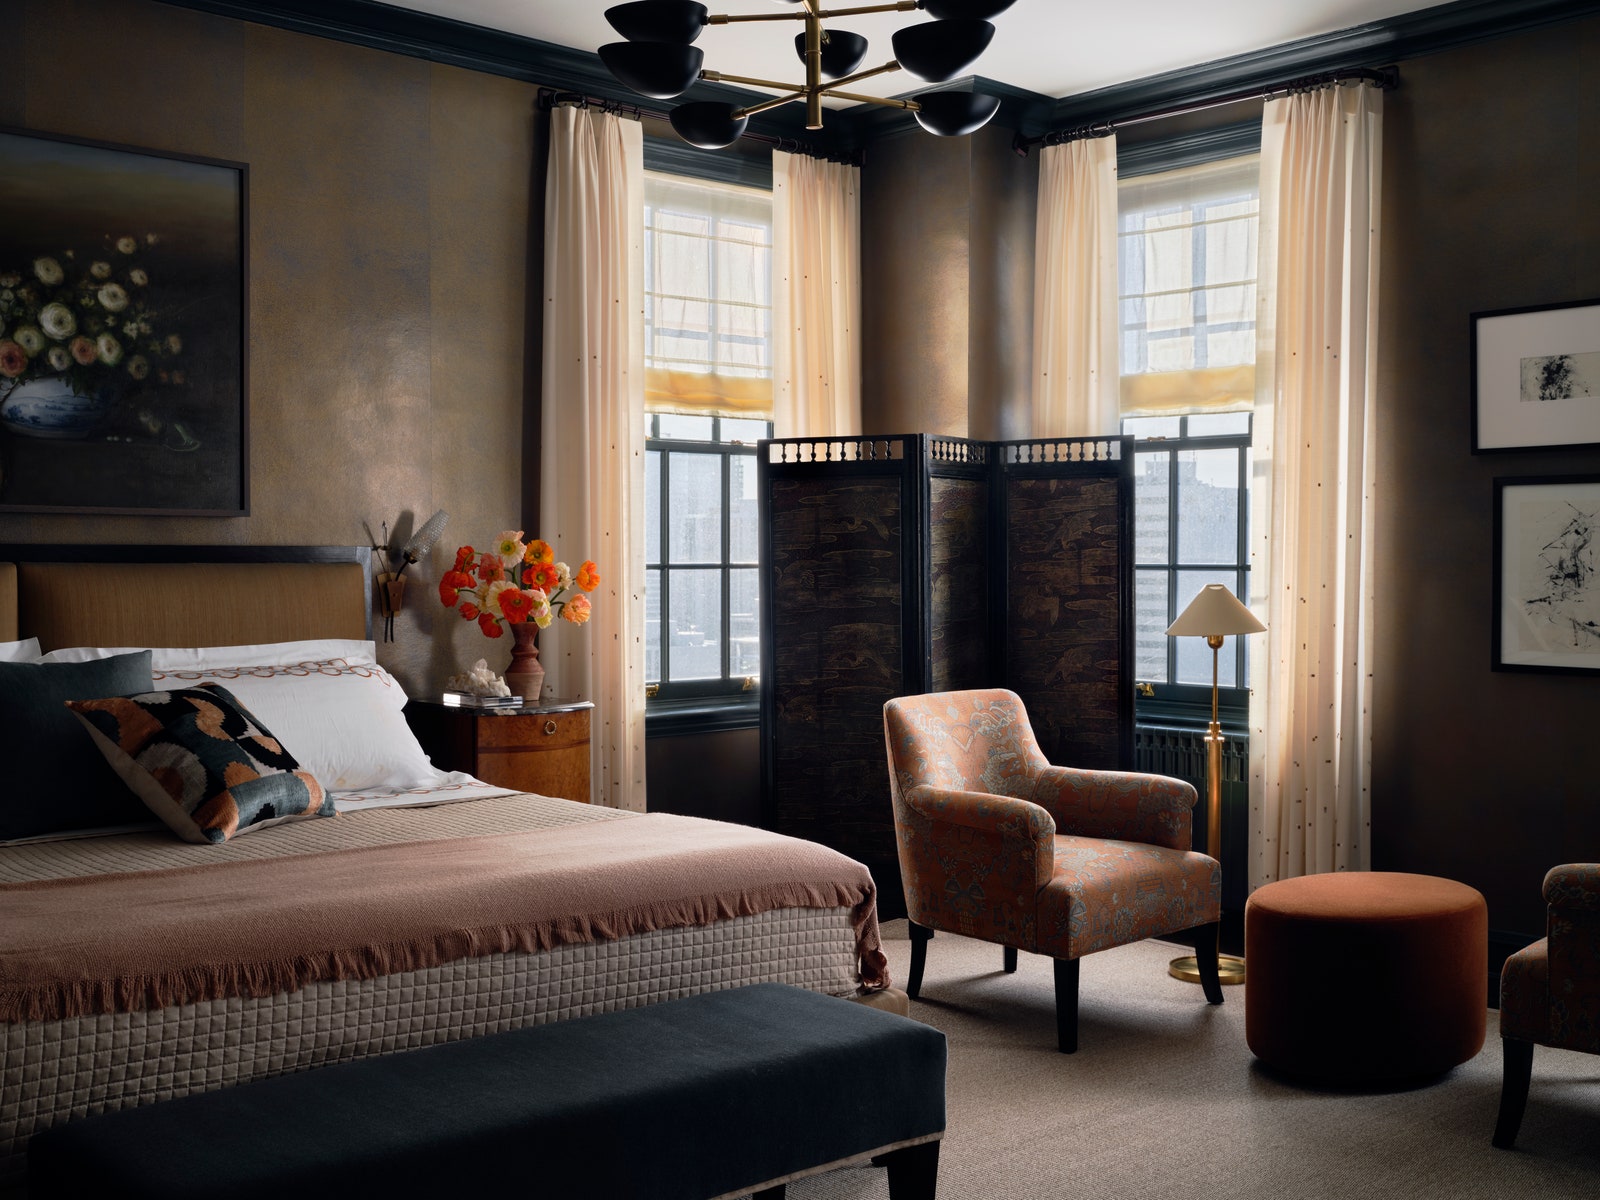 Chambre lit king size séparateur de pièce noir banc bleu petit coin salon avec deux chaises et un repose-pieds au milieu